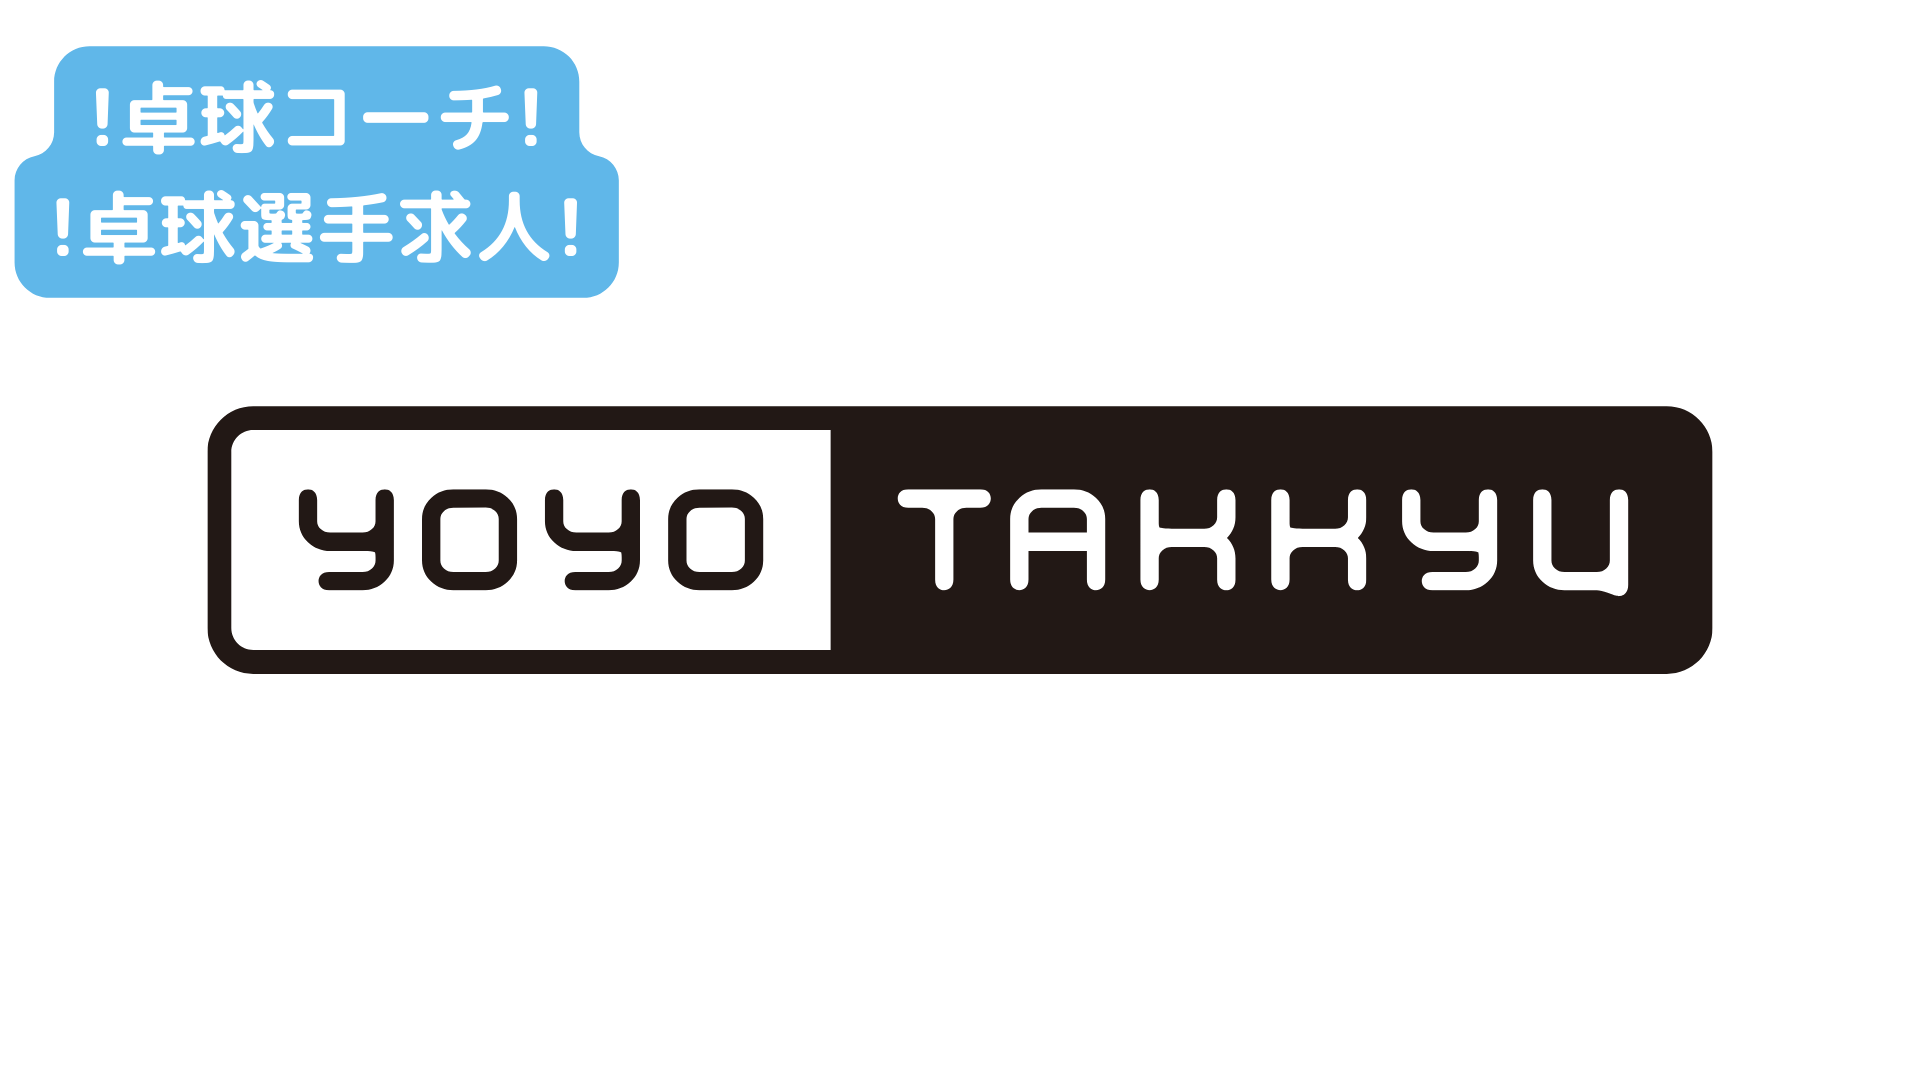 【YOYO TAKKYU】コーチと選手の両立、そして新しい卓球事業の形を一緒に作っていきたい方募集中！